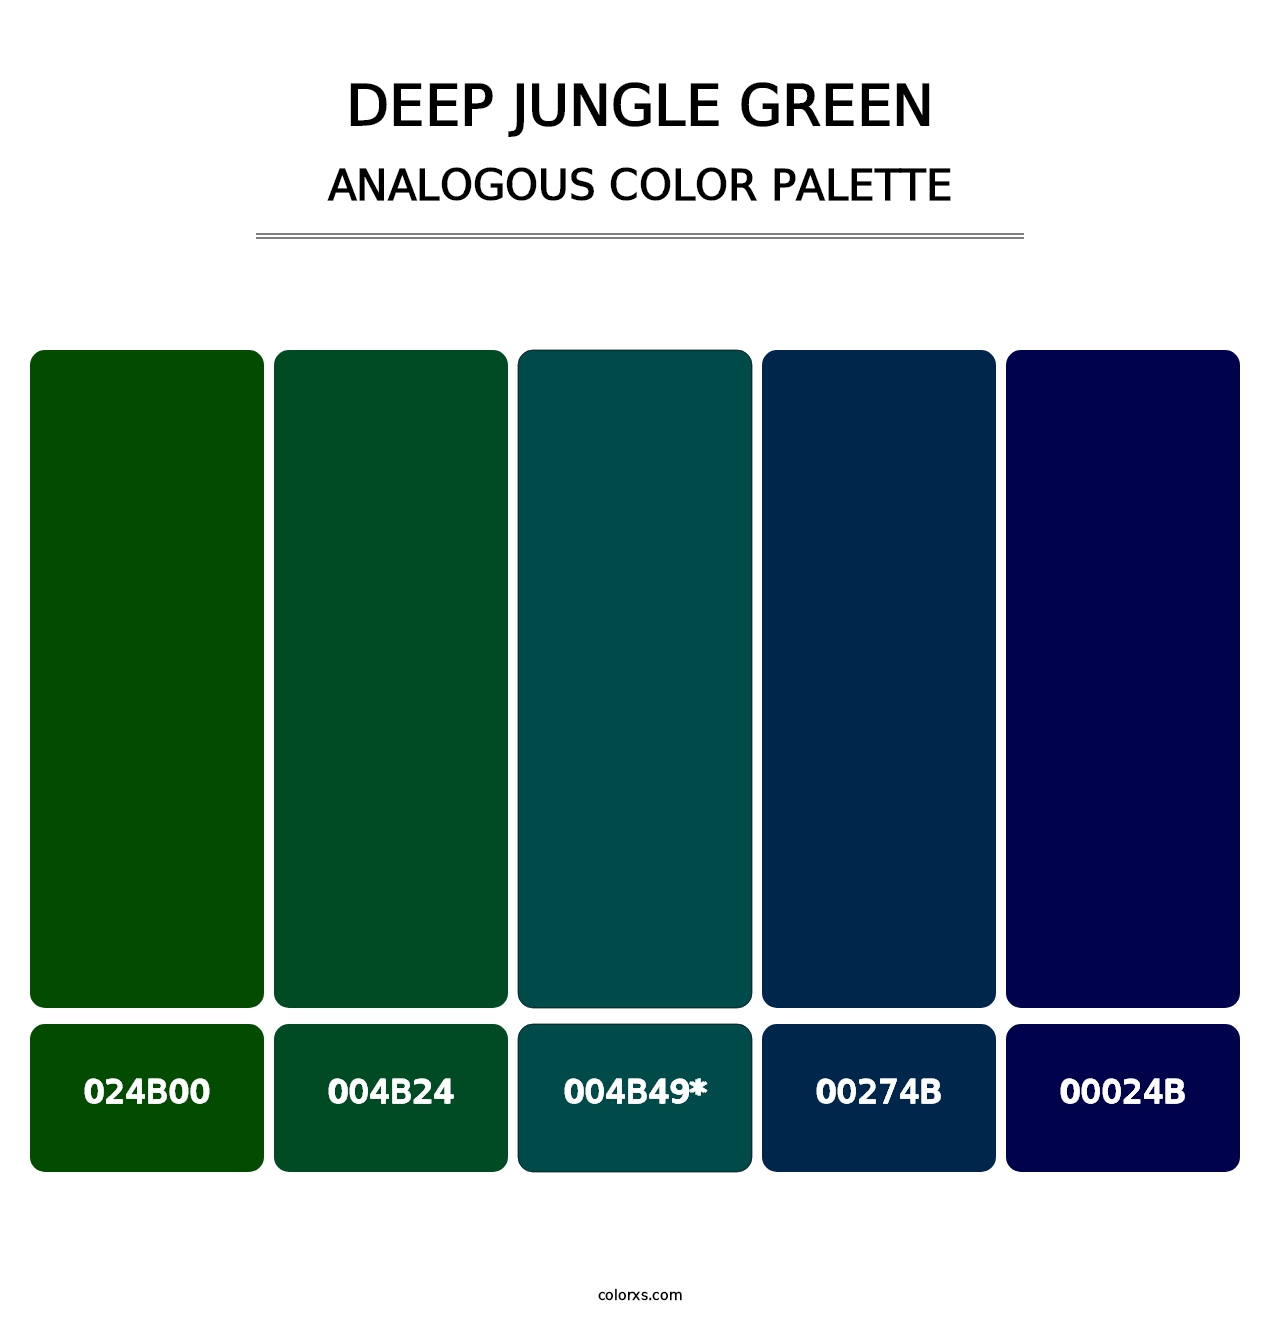 Deep Jungle Green - Analogous Color Palette